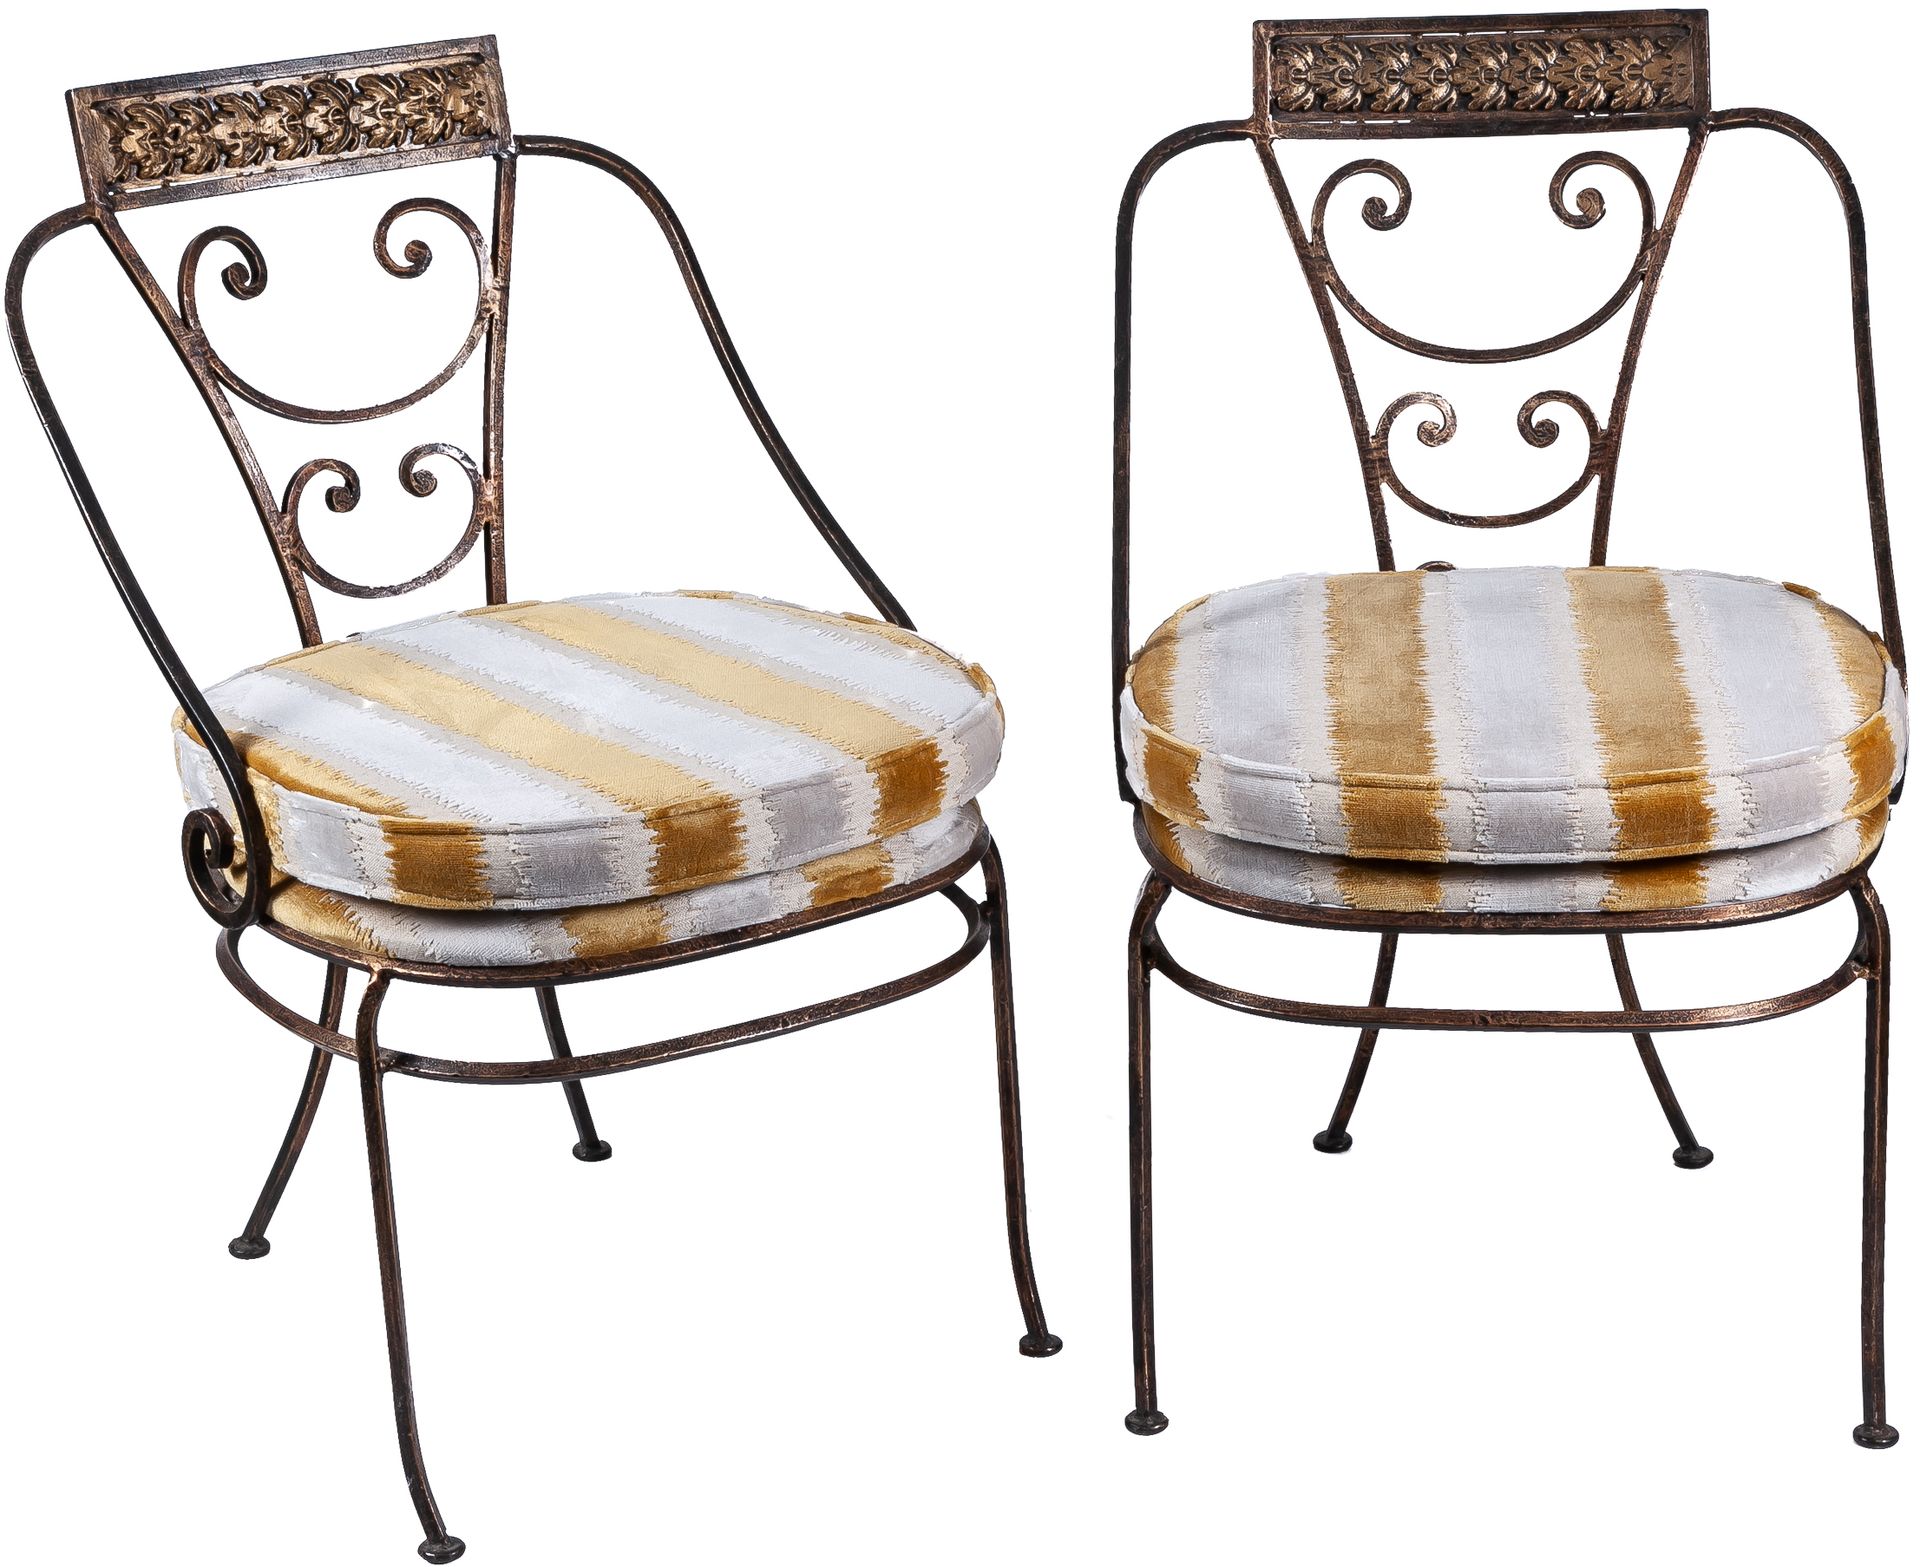 Null Une paire de chaises en fer patiné de style néoclassique

93 x 50 x 53 cm

&hellip;